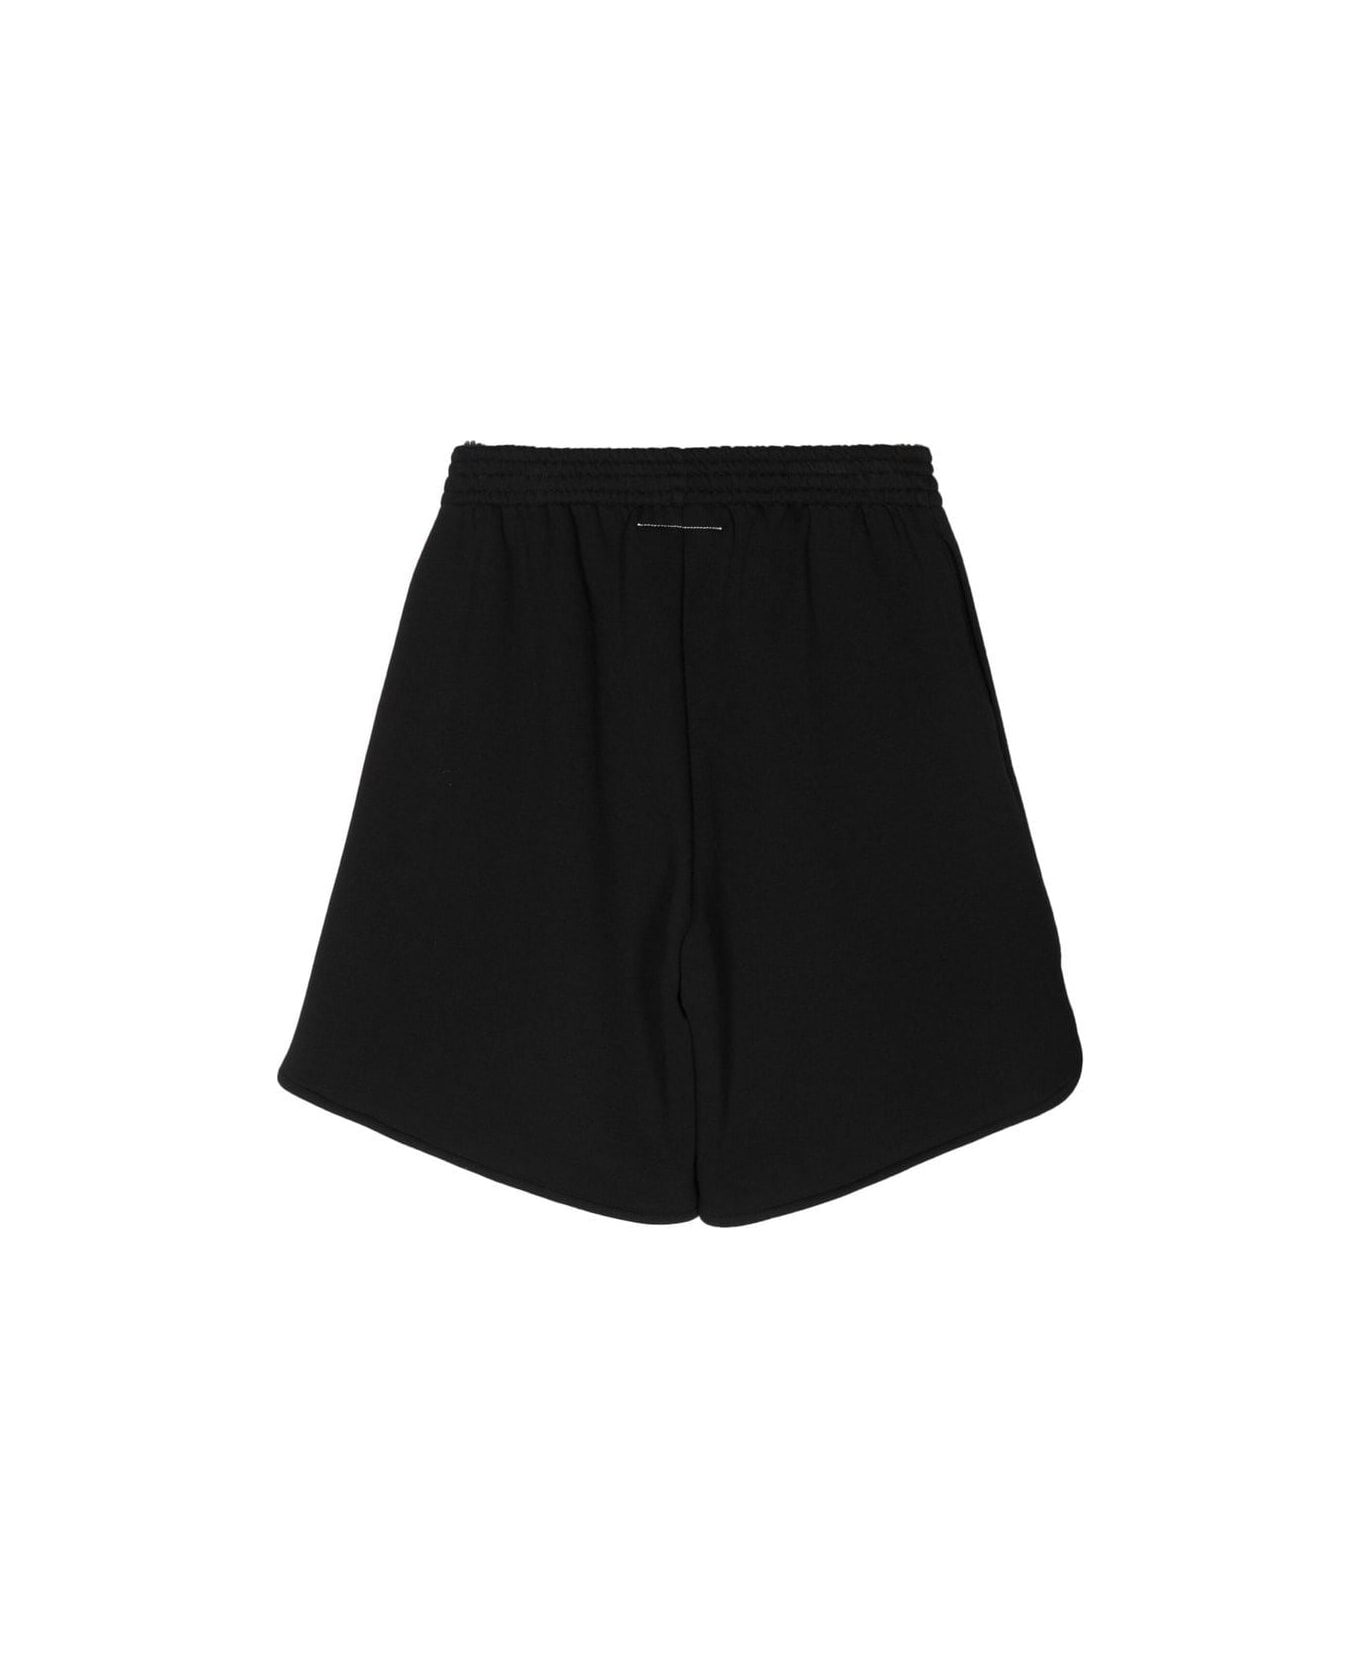 MM6 Maison Margiela Printed Shorts - Black